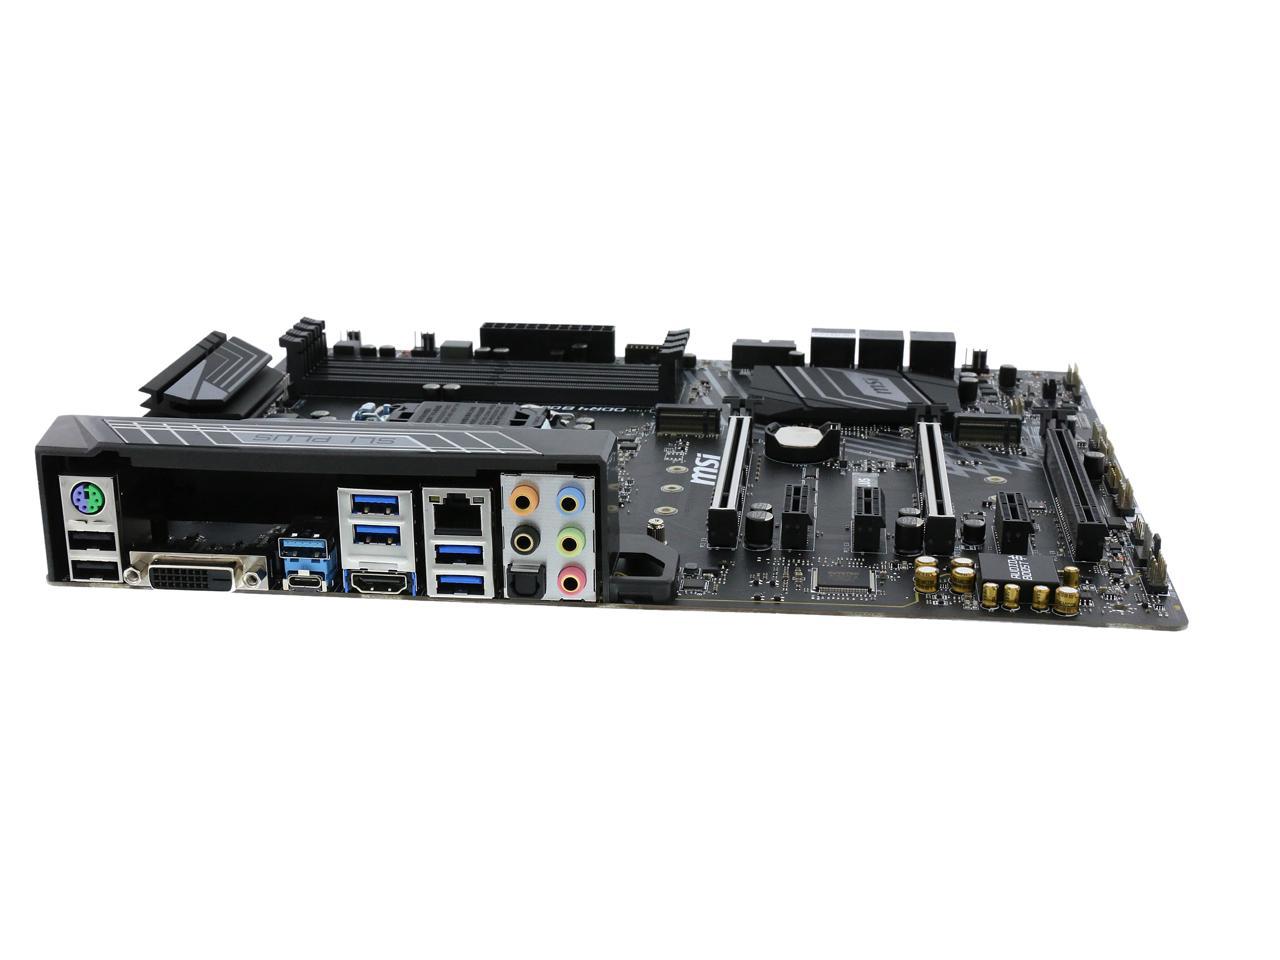 HDMI DDR4 LGA 1151 2x Turbo M.2 & 10x USB 3.1 2x Gen 2 & 8x Gen1 Z370 SLI PLUS